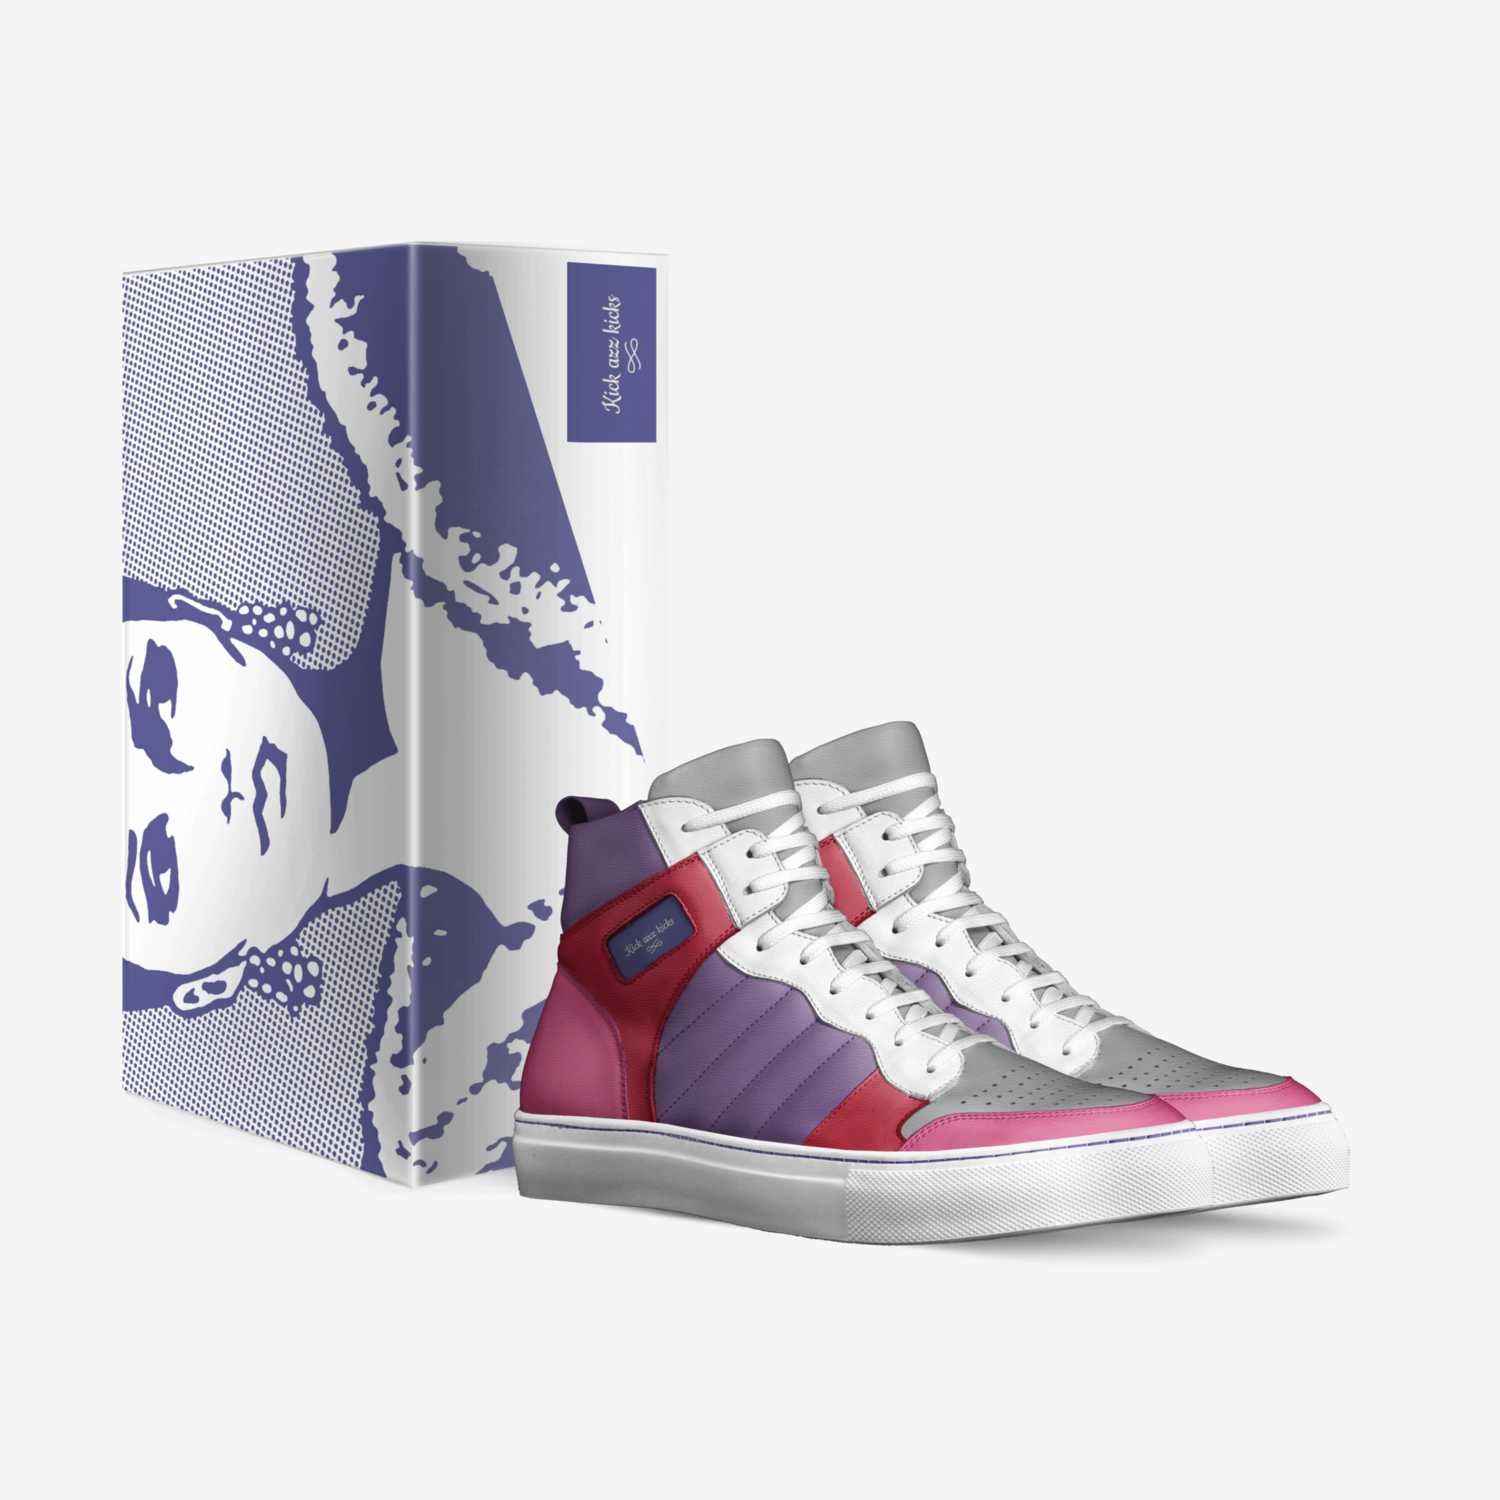 Kick azz kicks custom made in Italy shoes by Keaira Wilkey | Box view